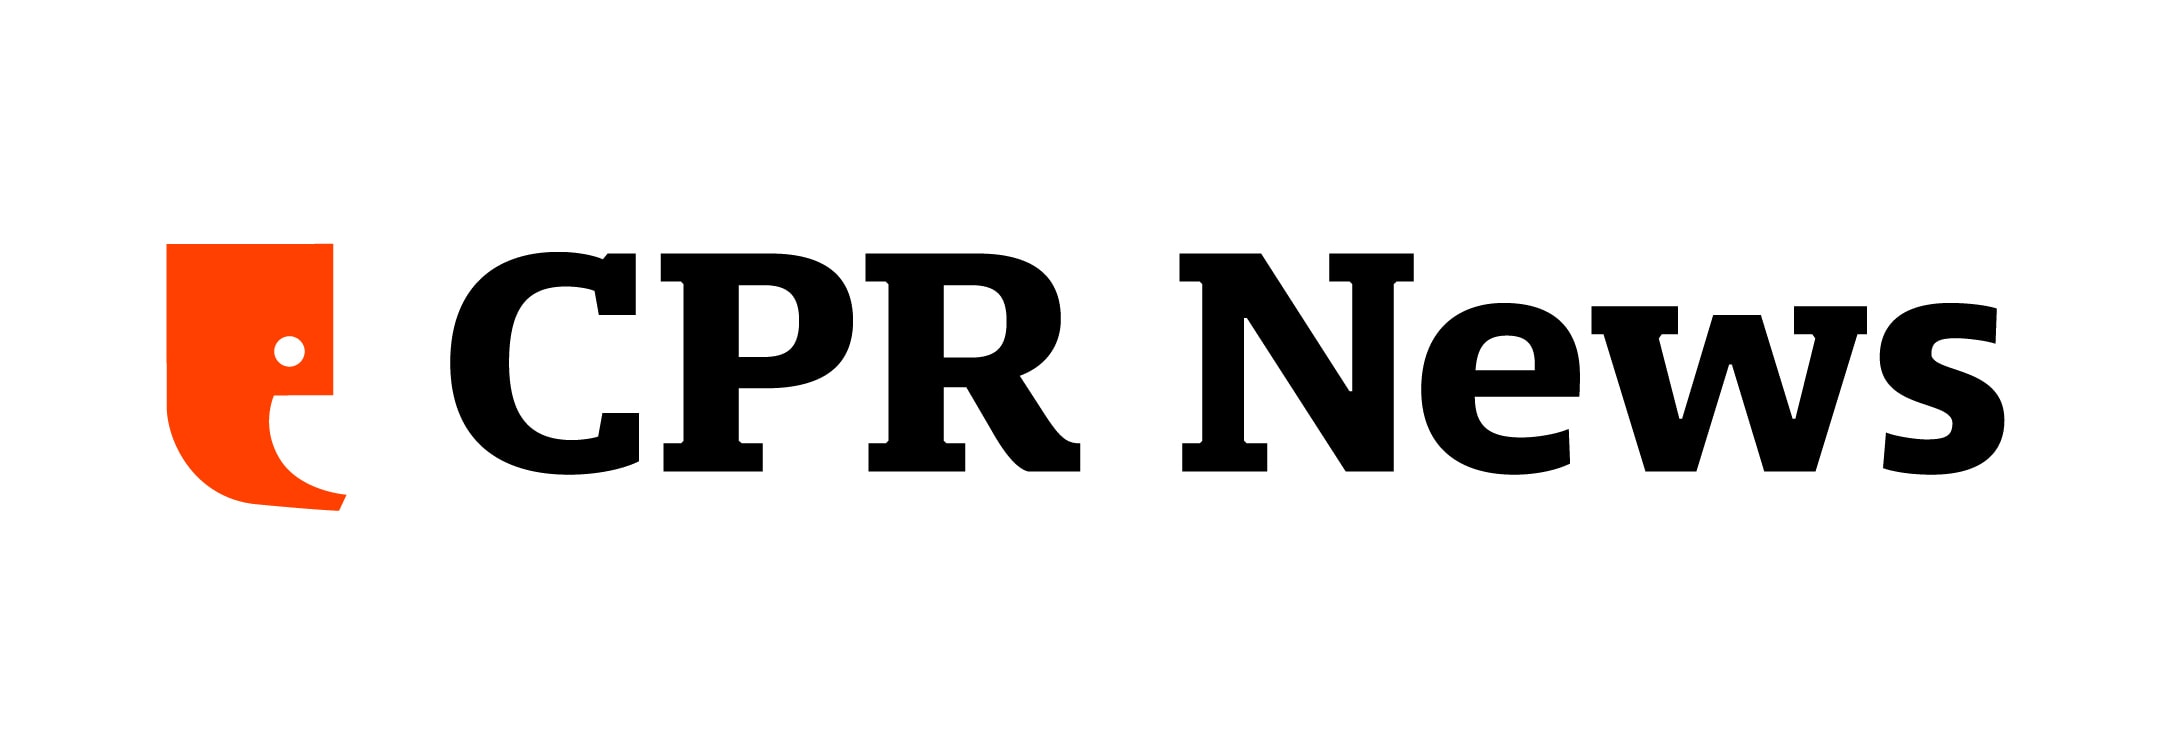 CPR NEWS Logo